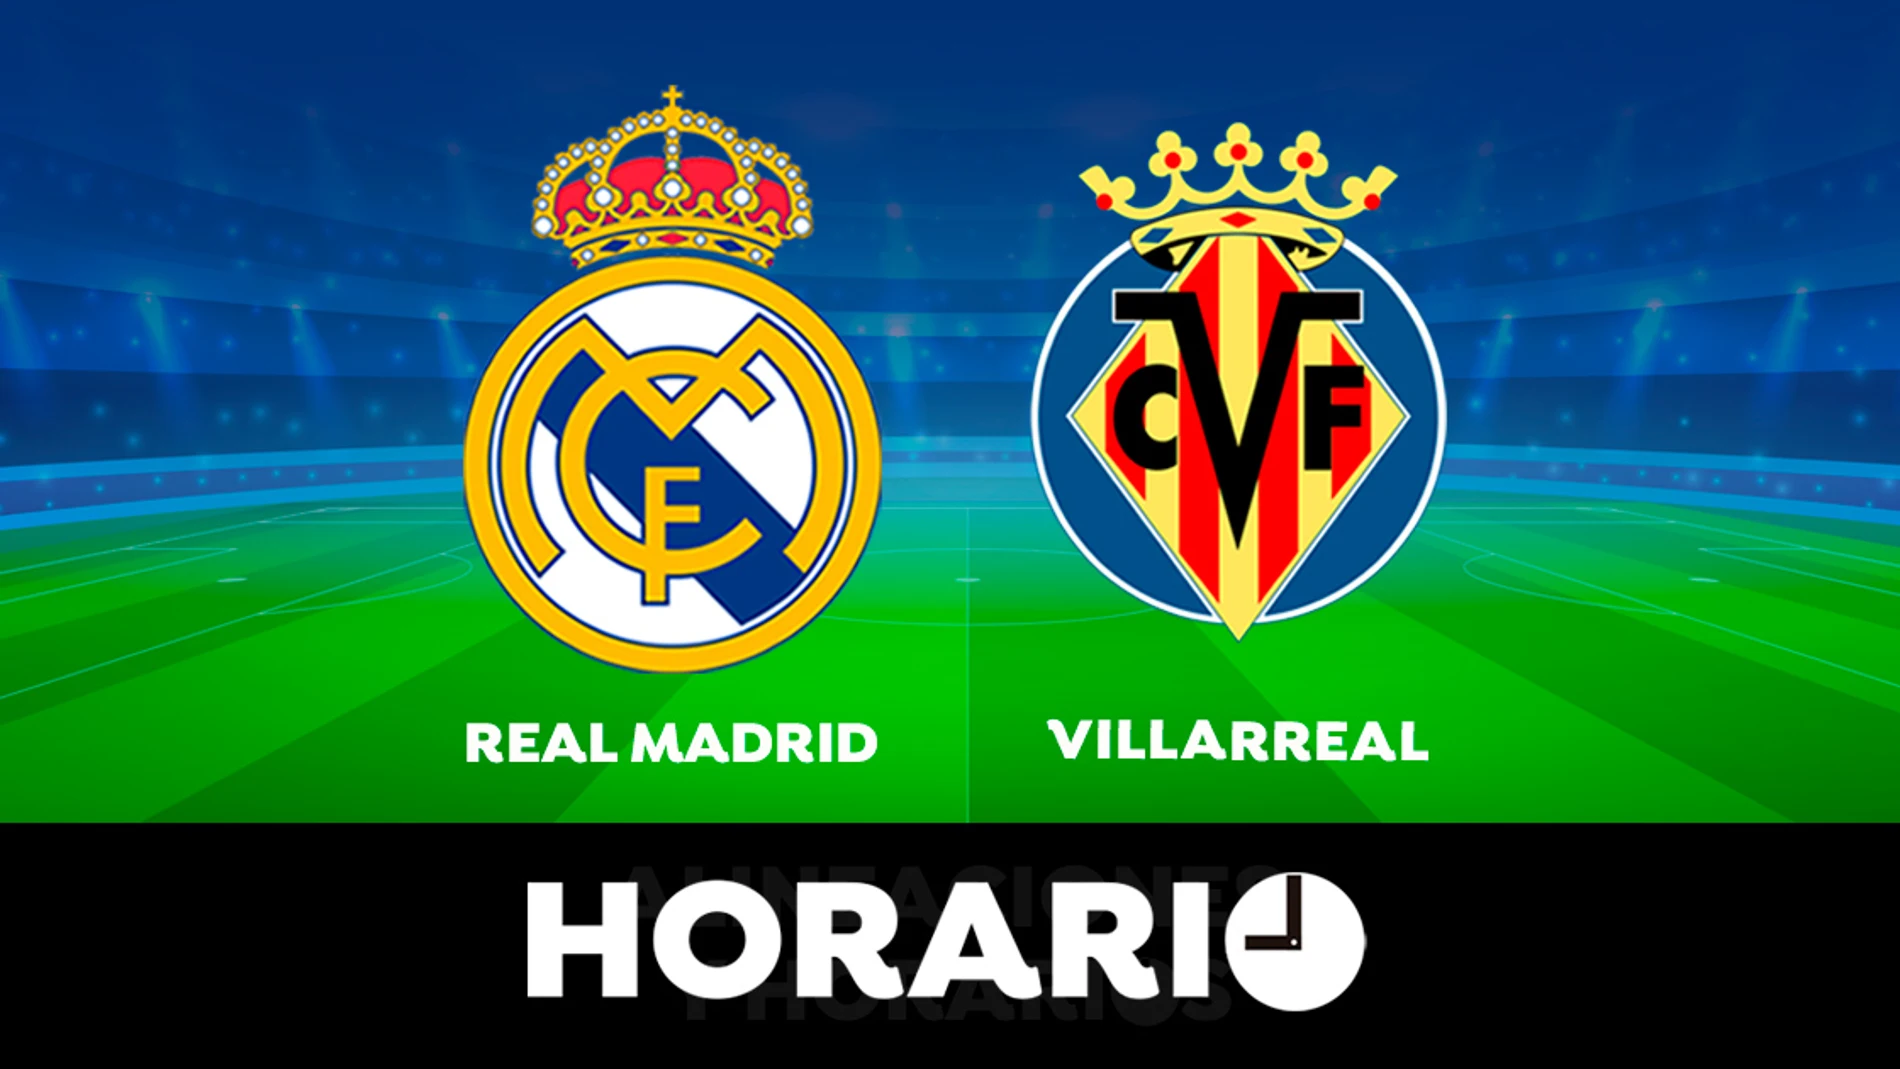 Real Madrid - Villarreal: Horario y dónde ver el partido de la Liga Santander en directo